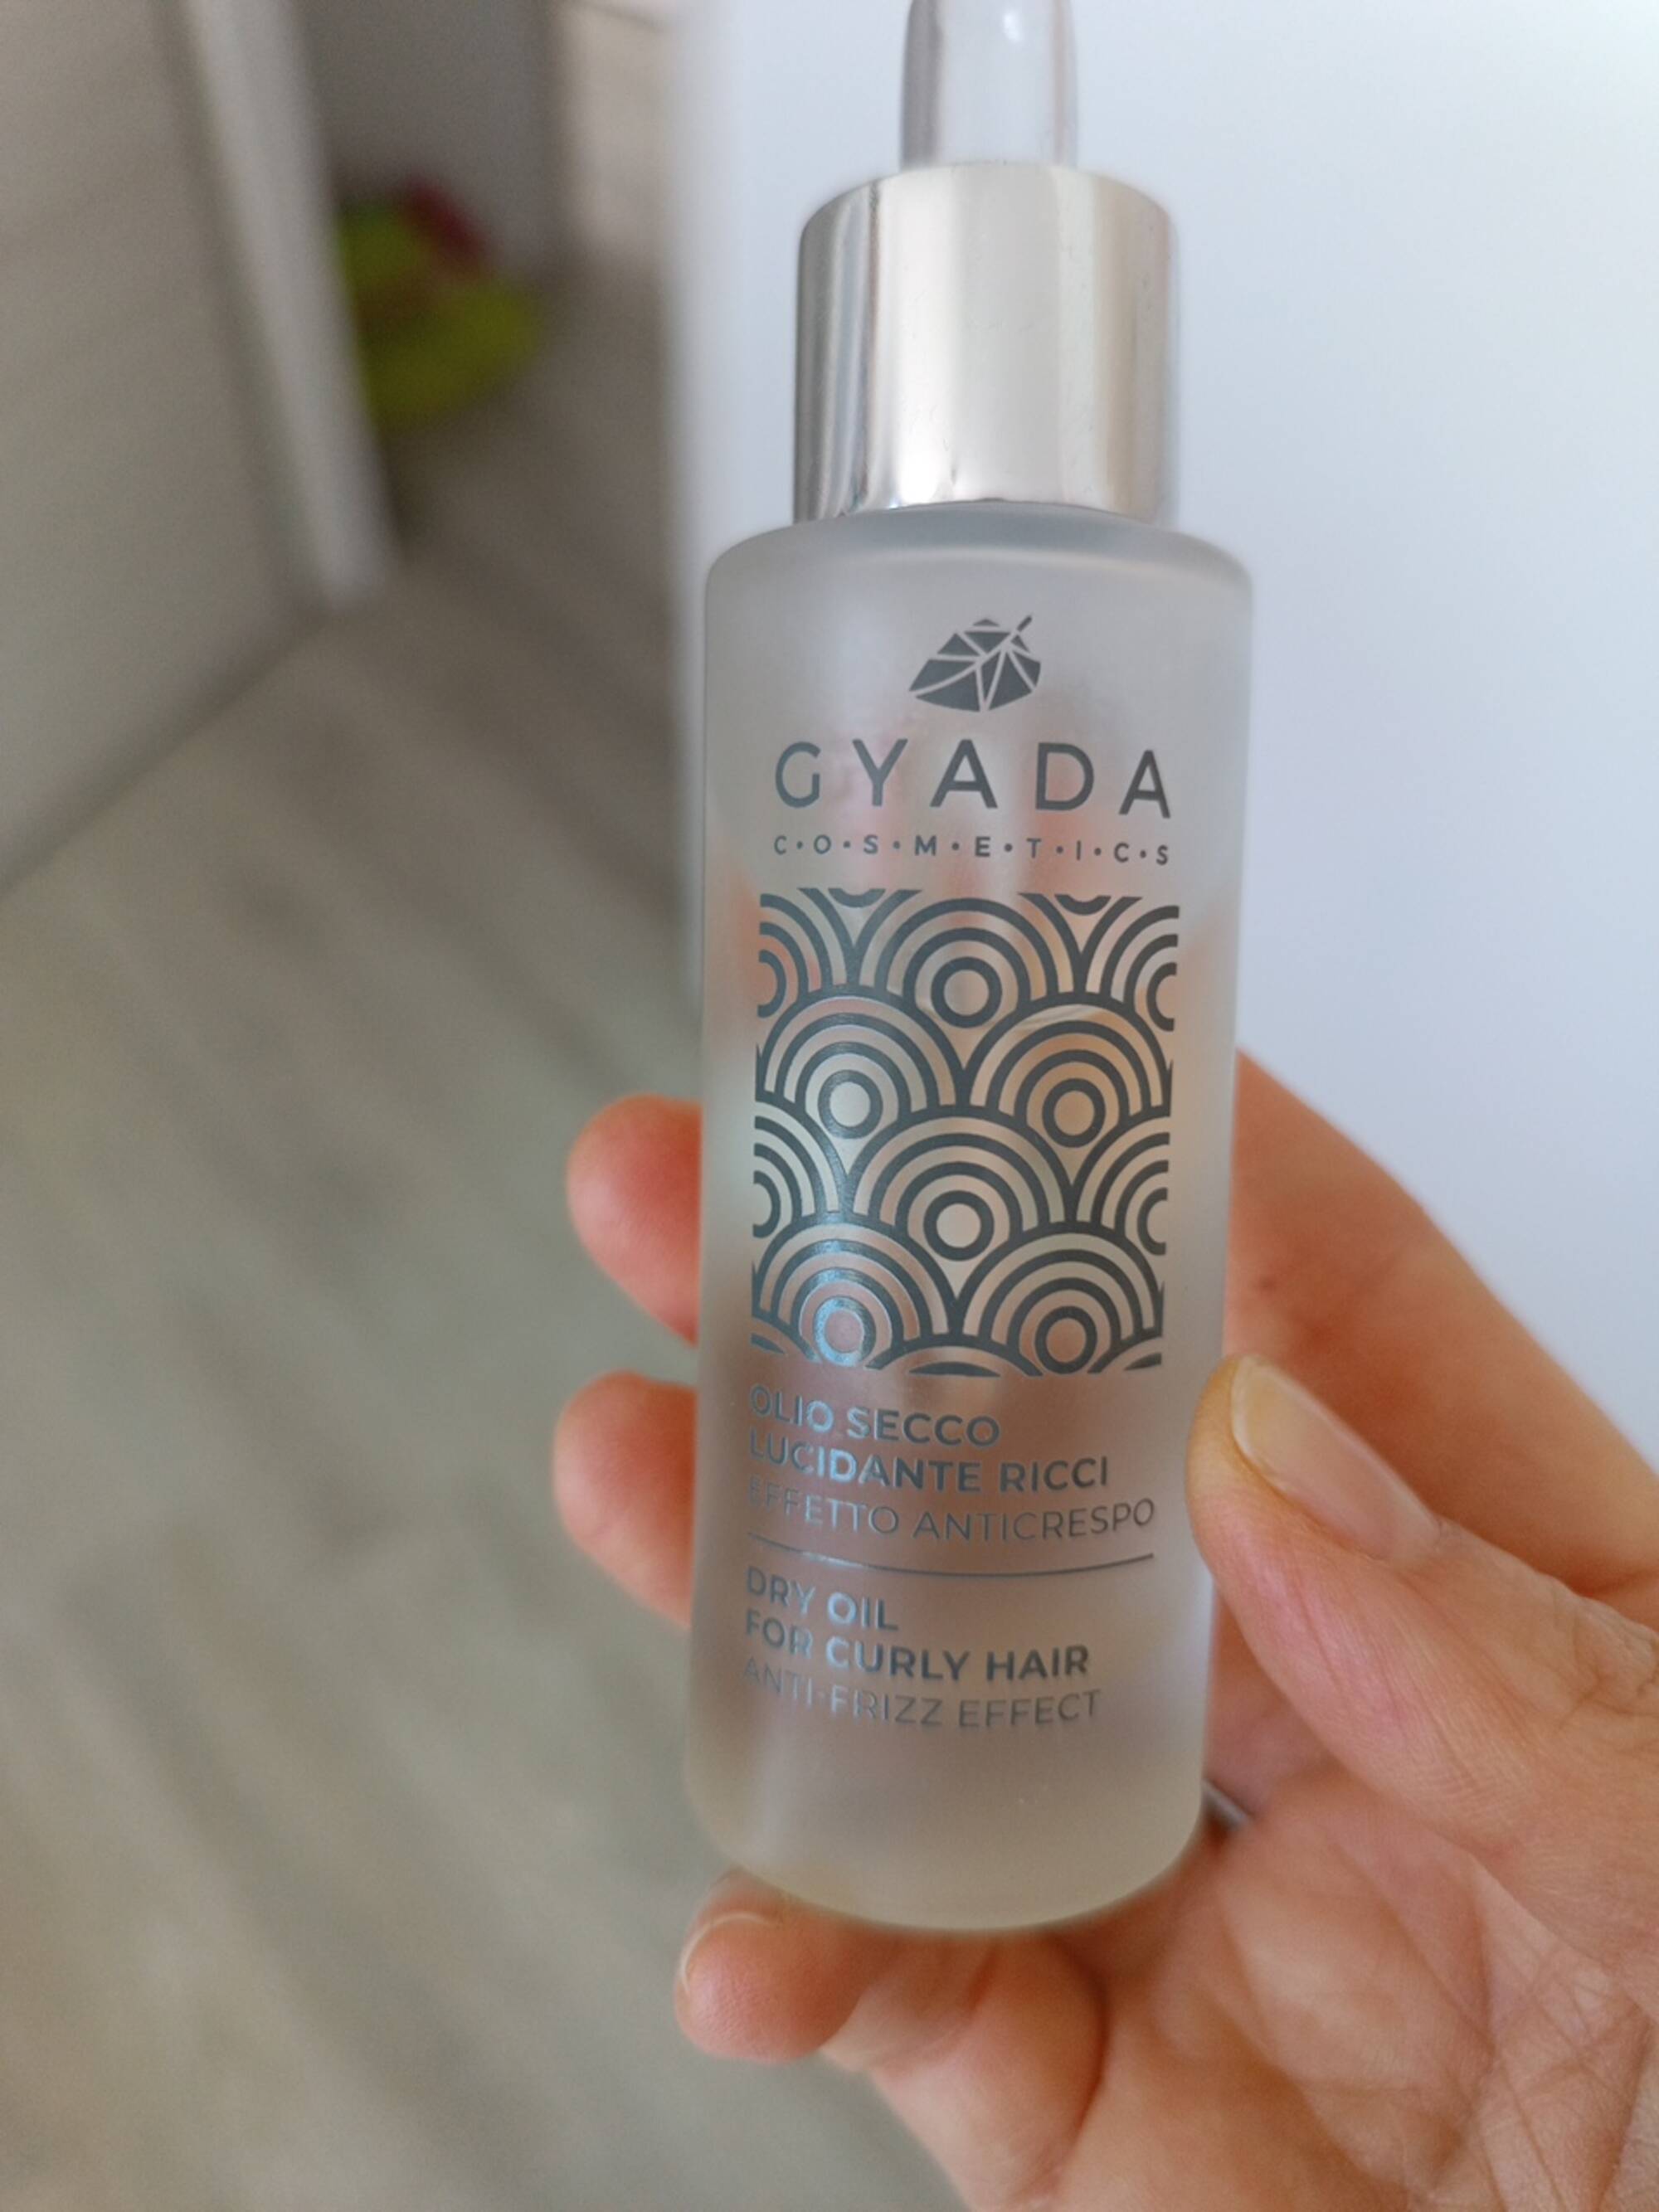 GYADA COSMETICS - Dry oil for curly hair anti friz effect 